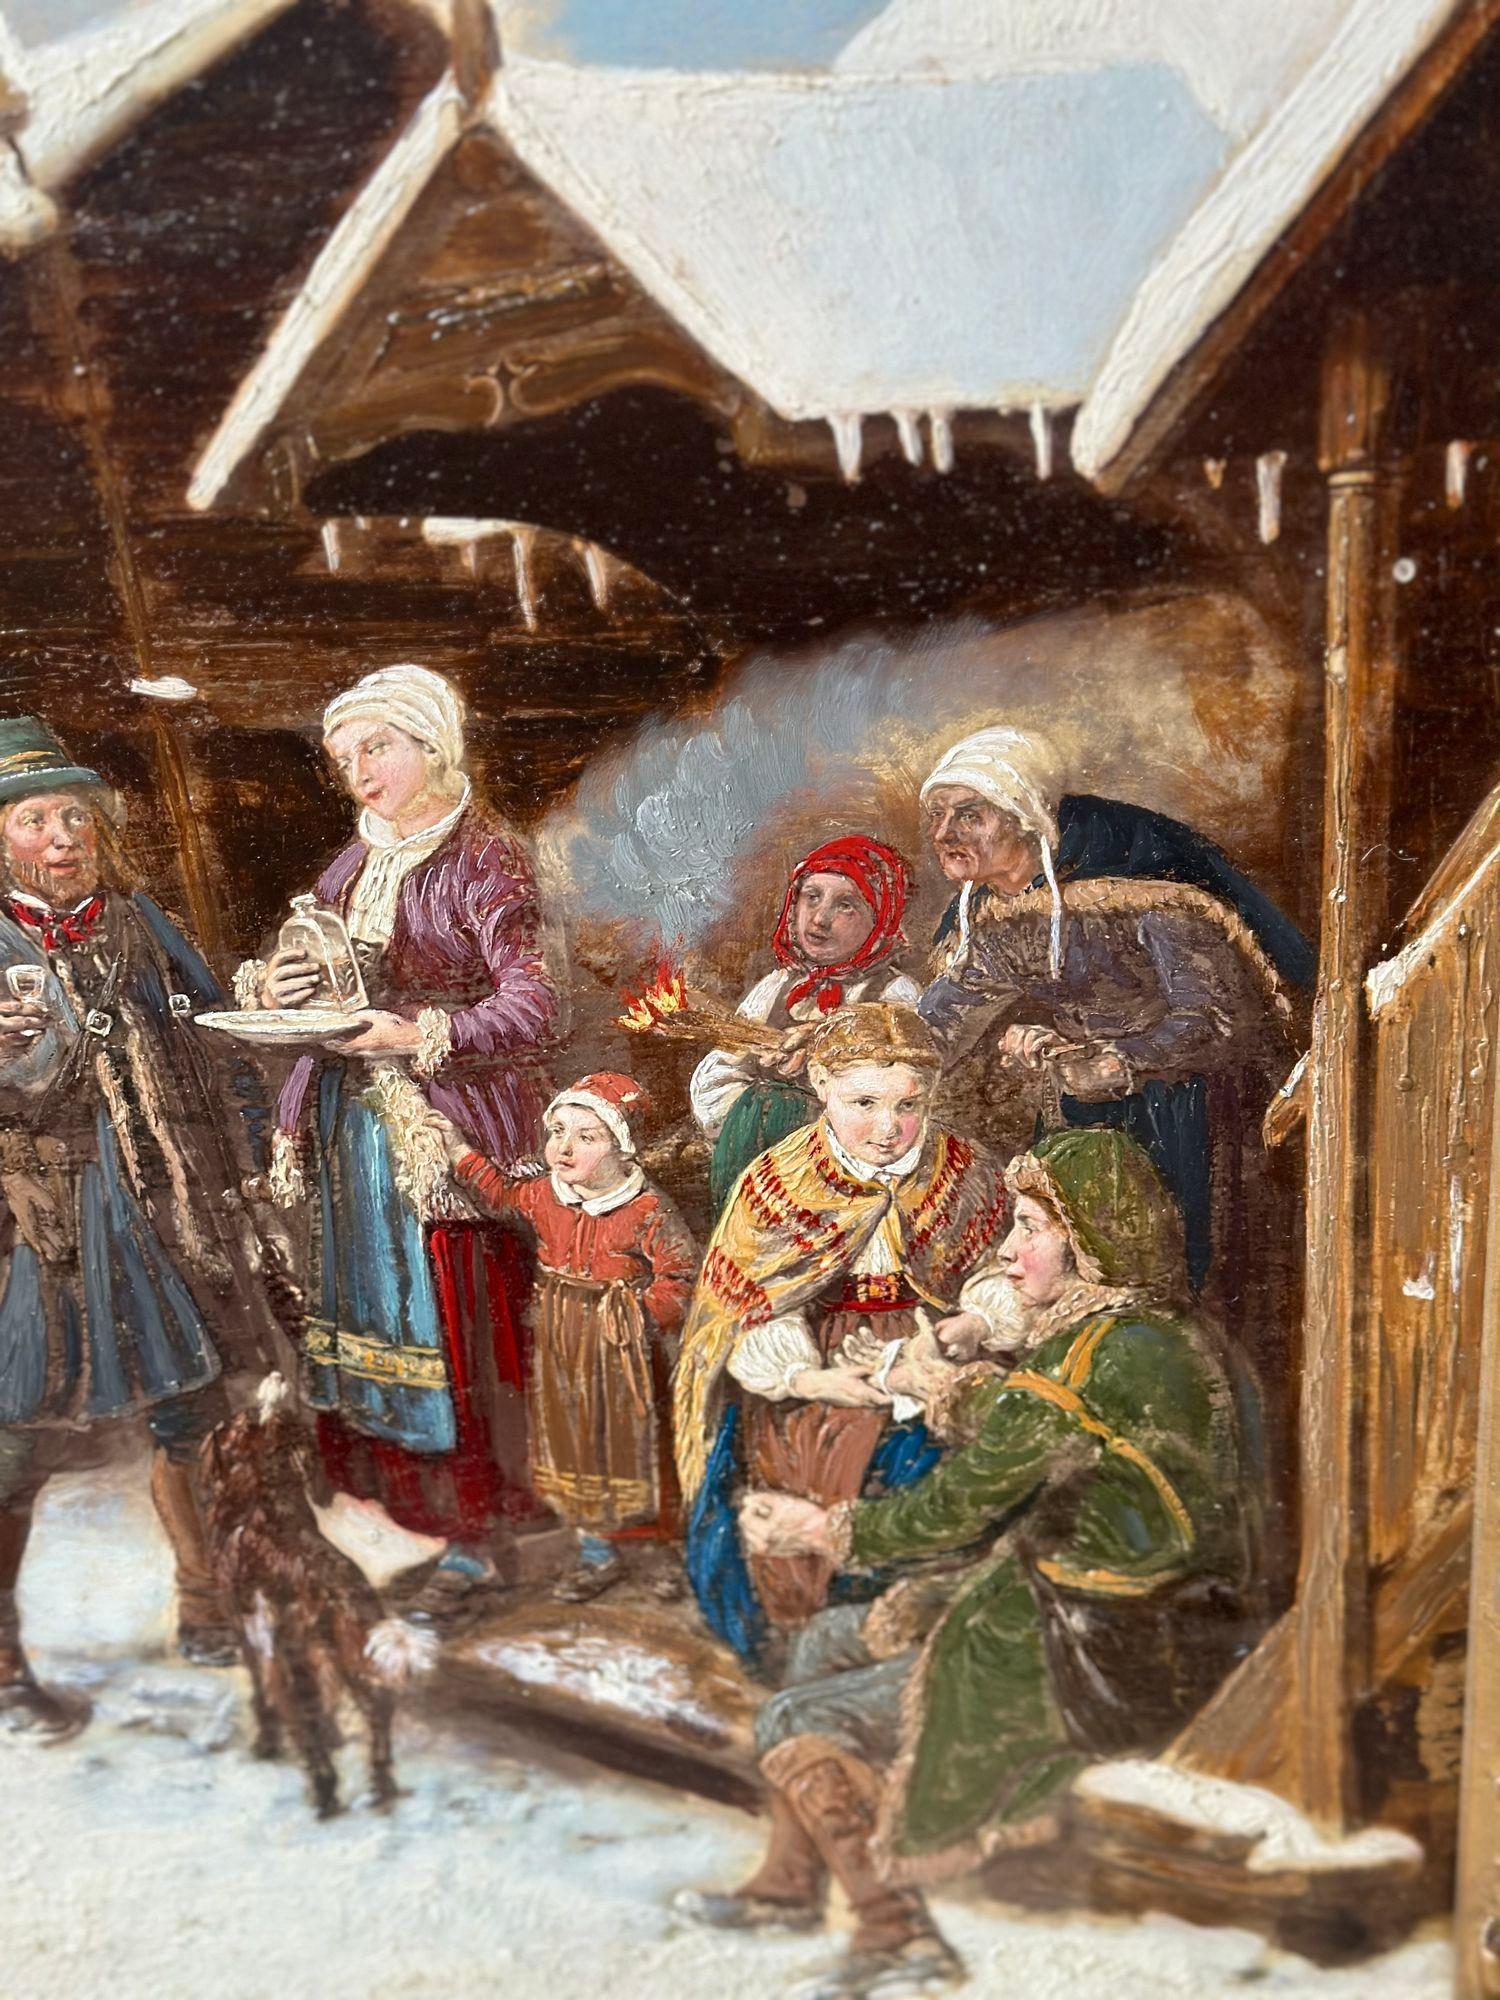 Cette huile sur toile russe du XIXe siècle nous transporte dans un pittoresque village enneigé de Russie. La scène se déroule à l'extérieur d'un charmant cottage, où une famille s'est réunie après une chasse au renne réussie. La toile capture